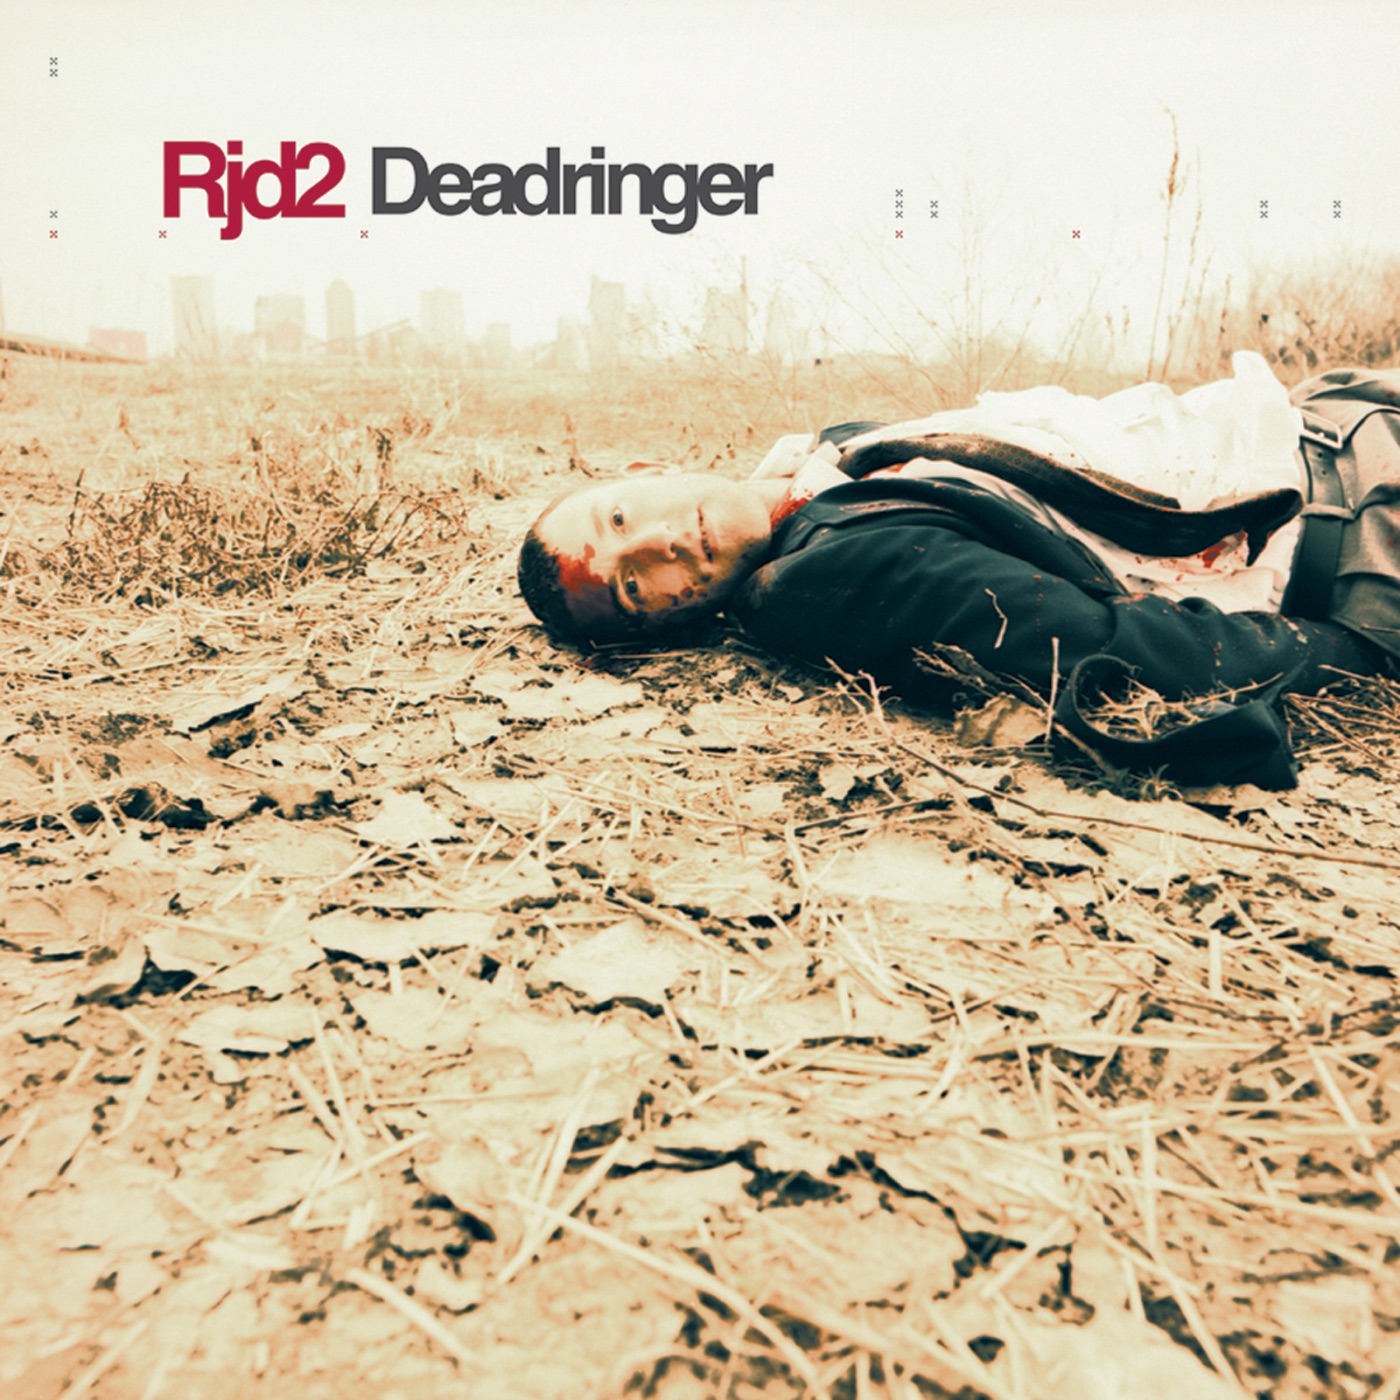 Deadringer by RJD2